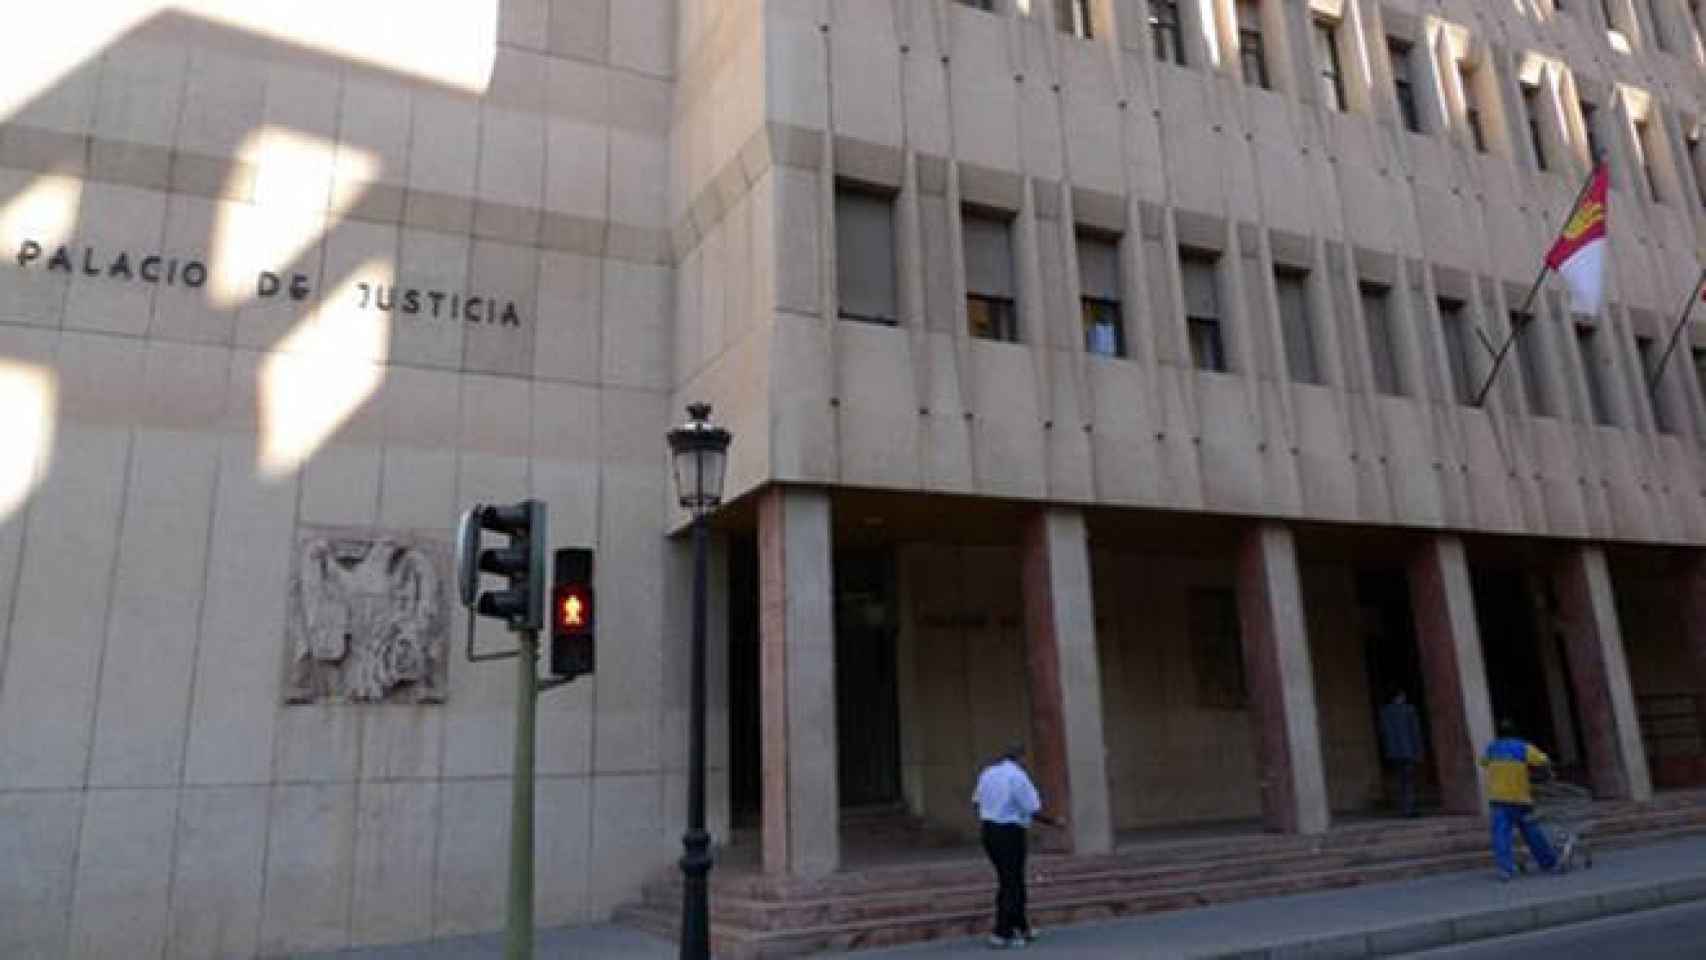 El martes se juzga en Albacete al conductor de autobús acusado de abuso sexual contra una menor en una parada